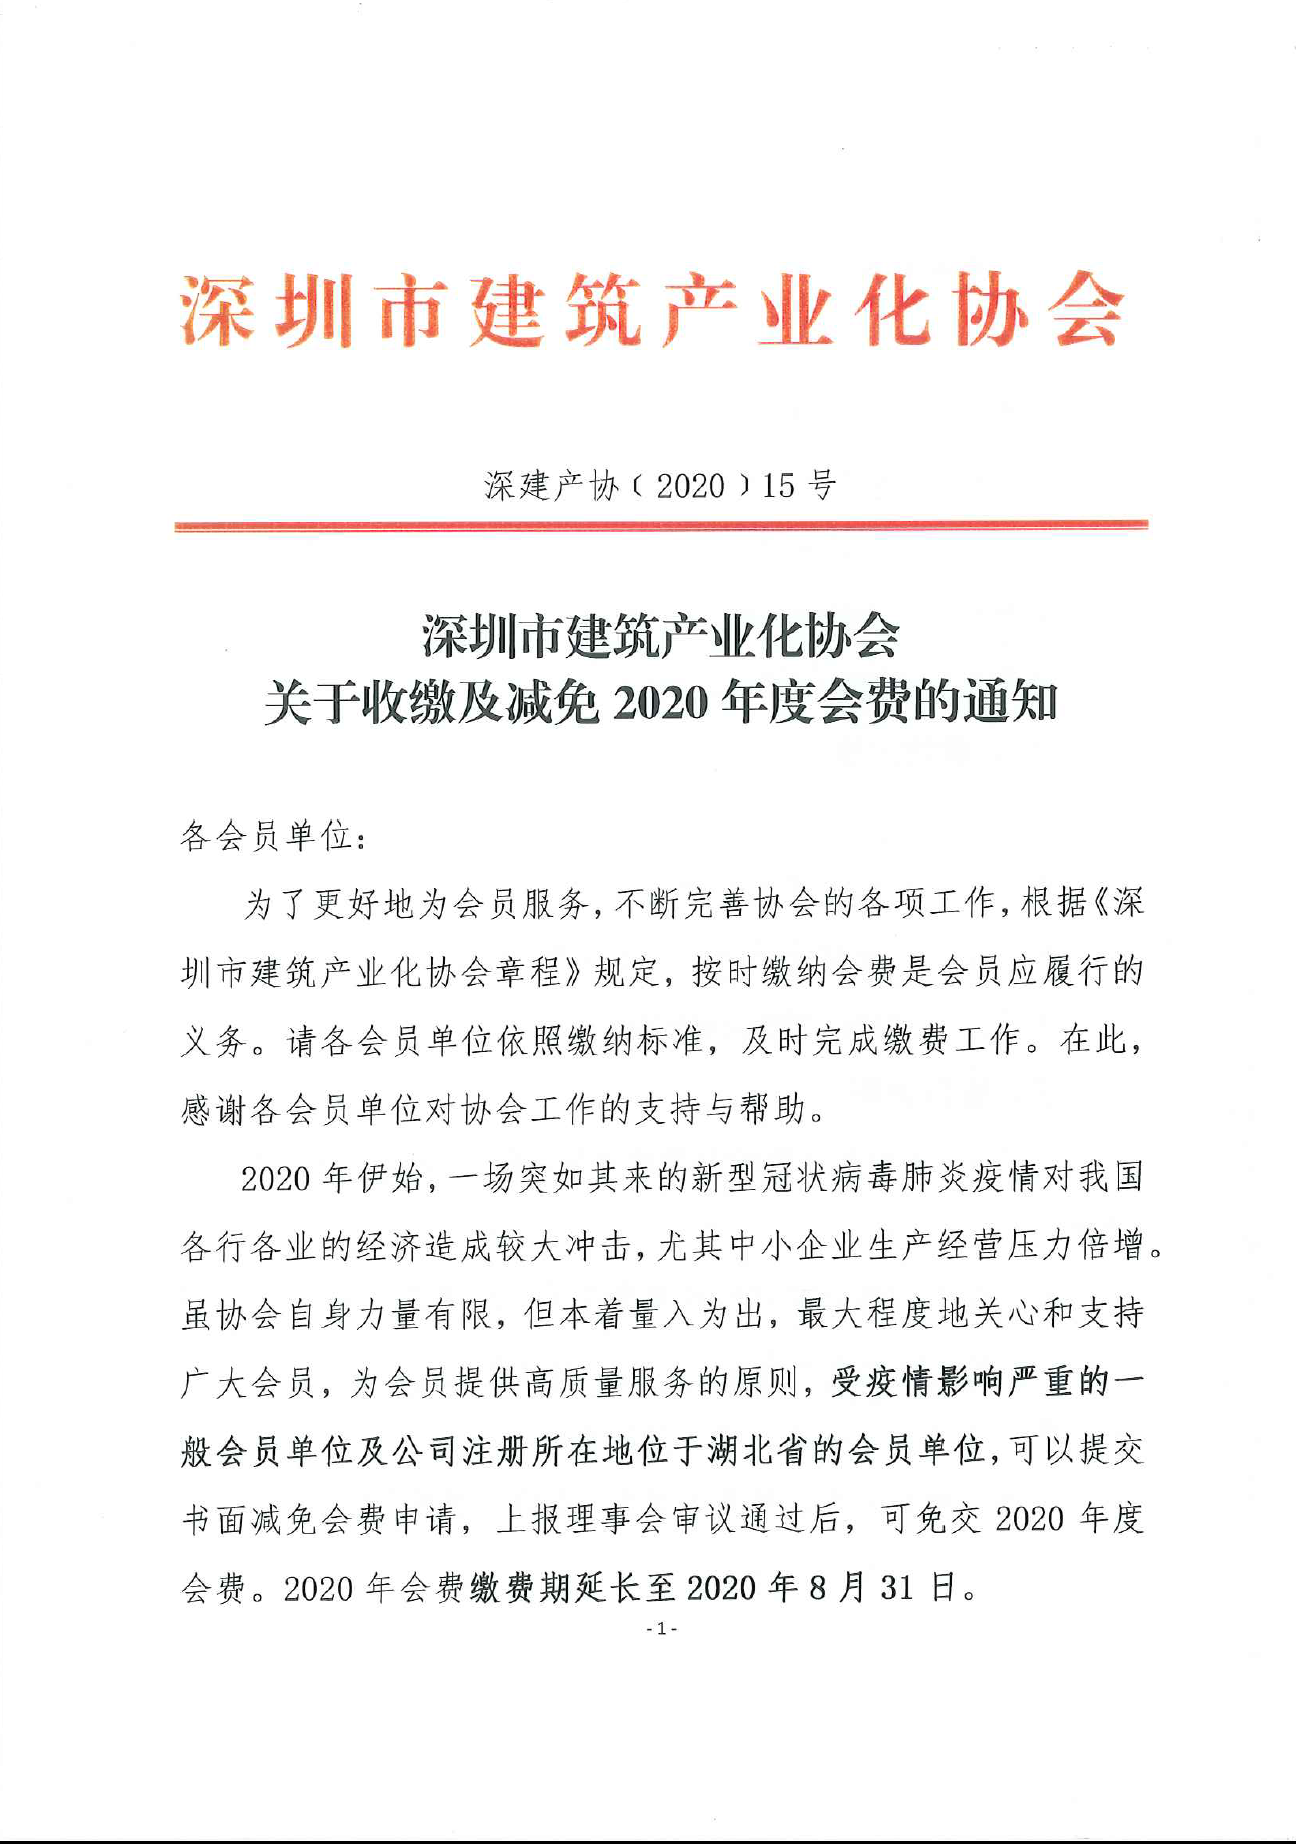 深圳市建筑产业化协会关于收缴及减免2020年度会费的通知